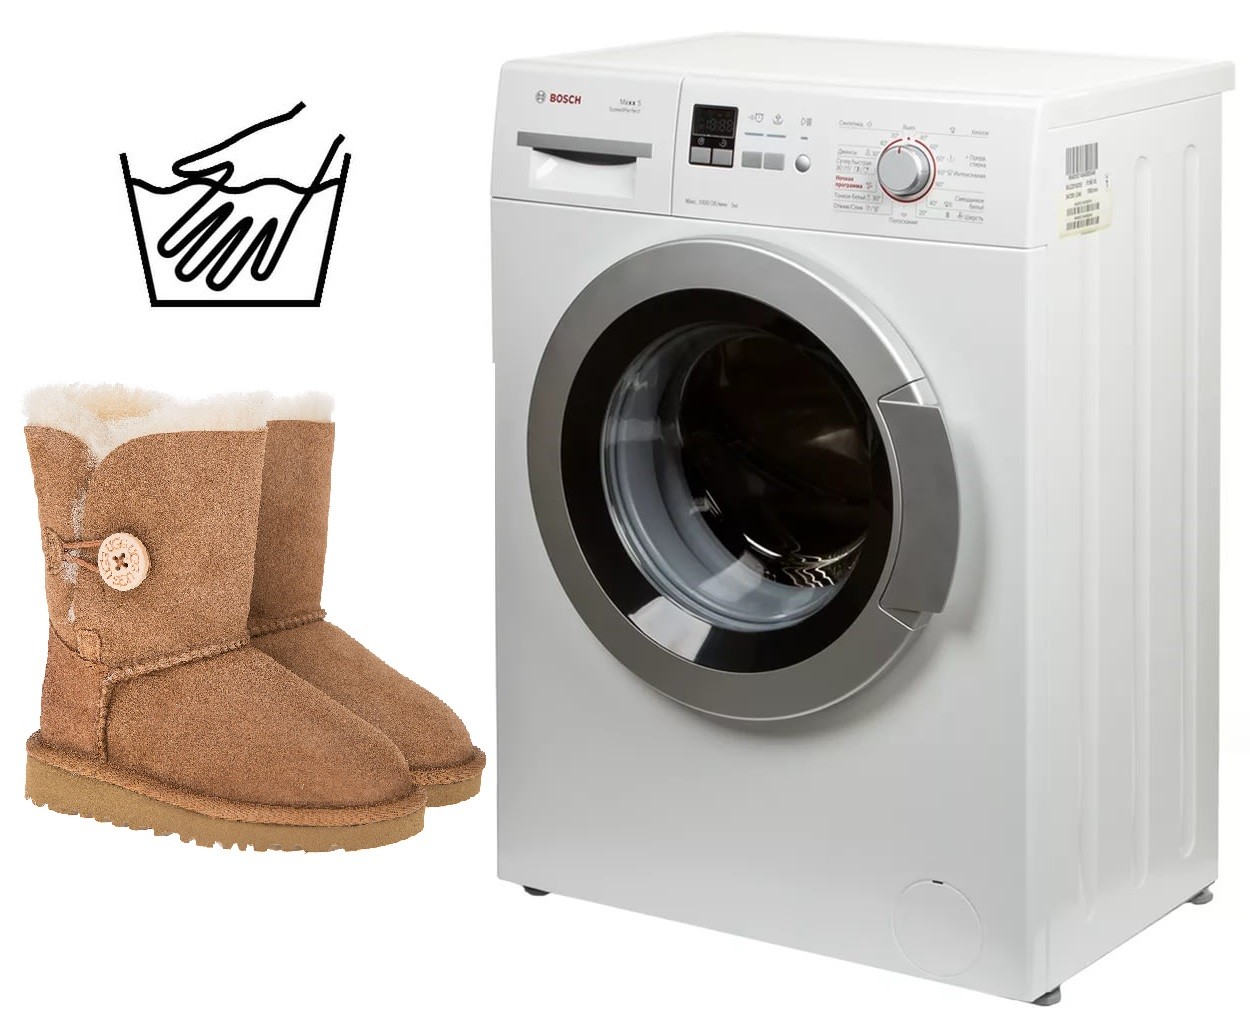 Wie man Ugg-Stiefel in einer Waschmaschine wäscht